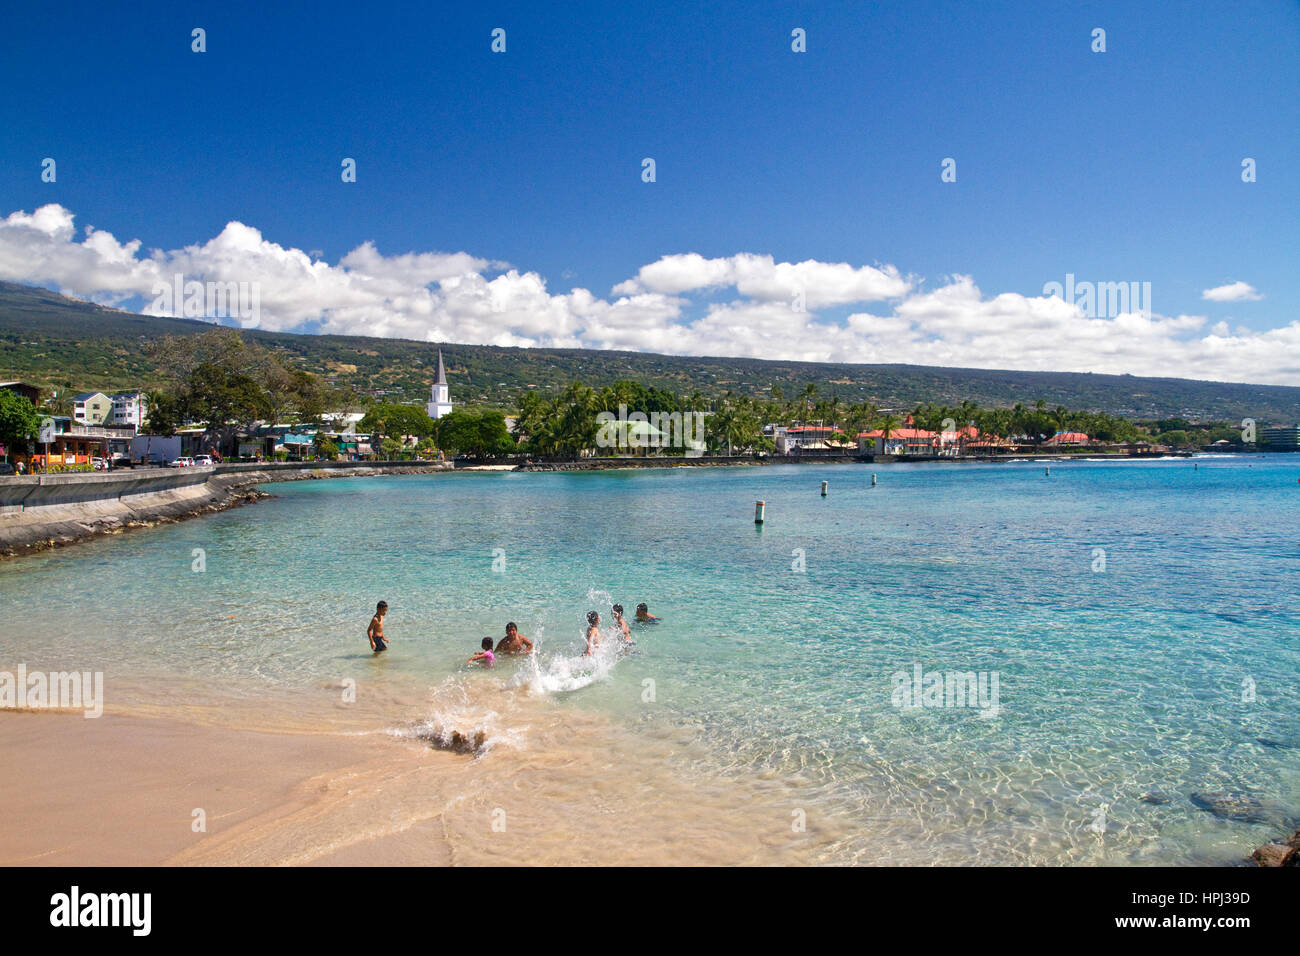 La natation de personnes dans la baie de Kailua-Kona sur la grande île d'Hawaii, Hawaii, USA. Banque D'Images